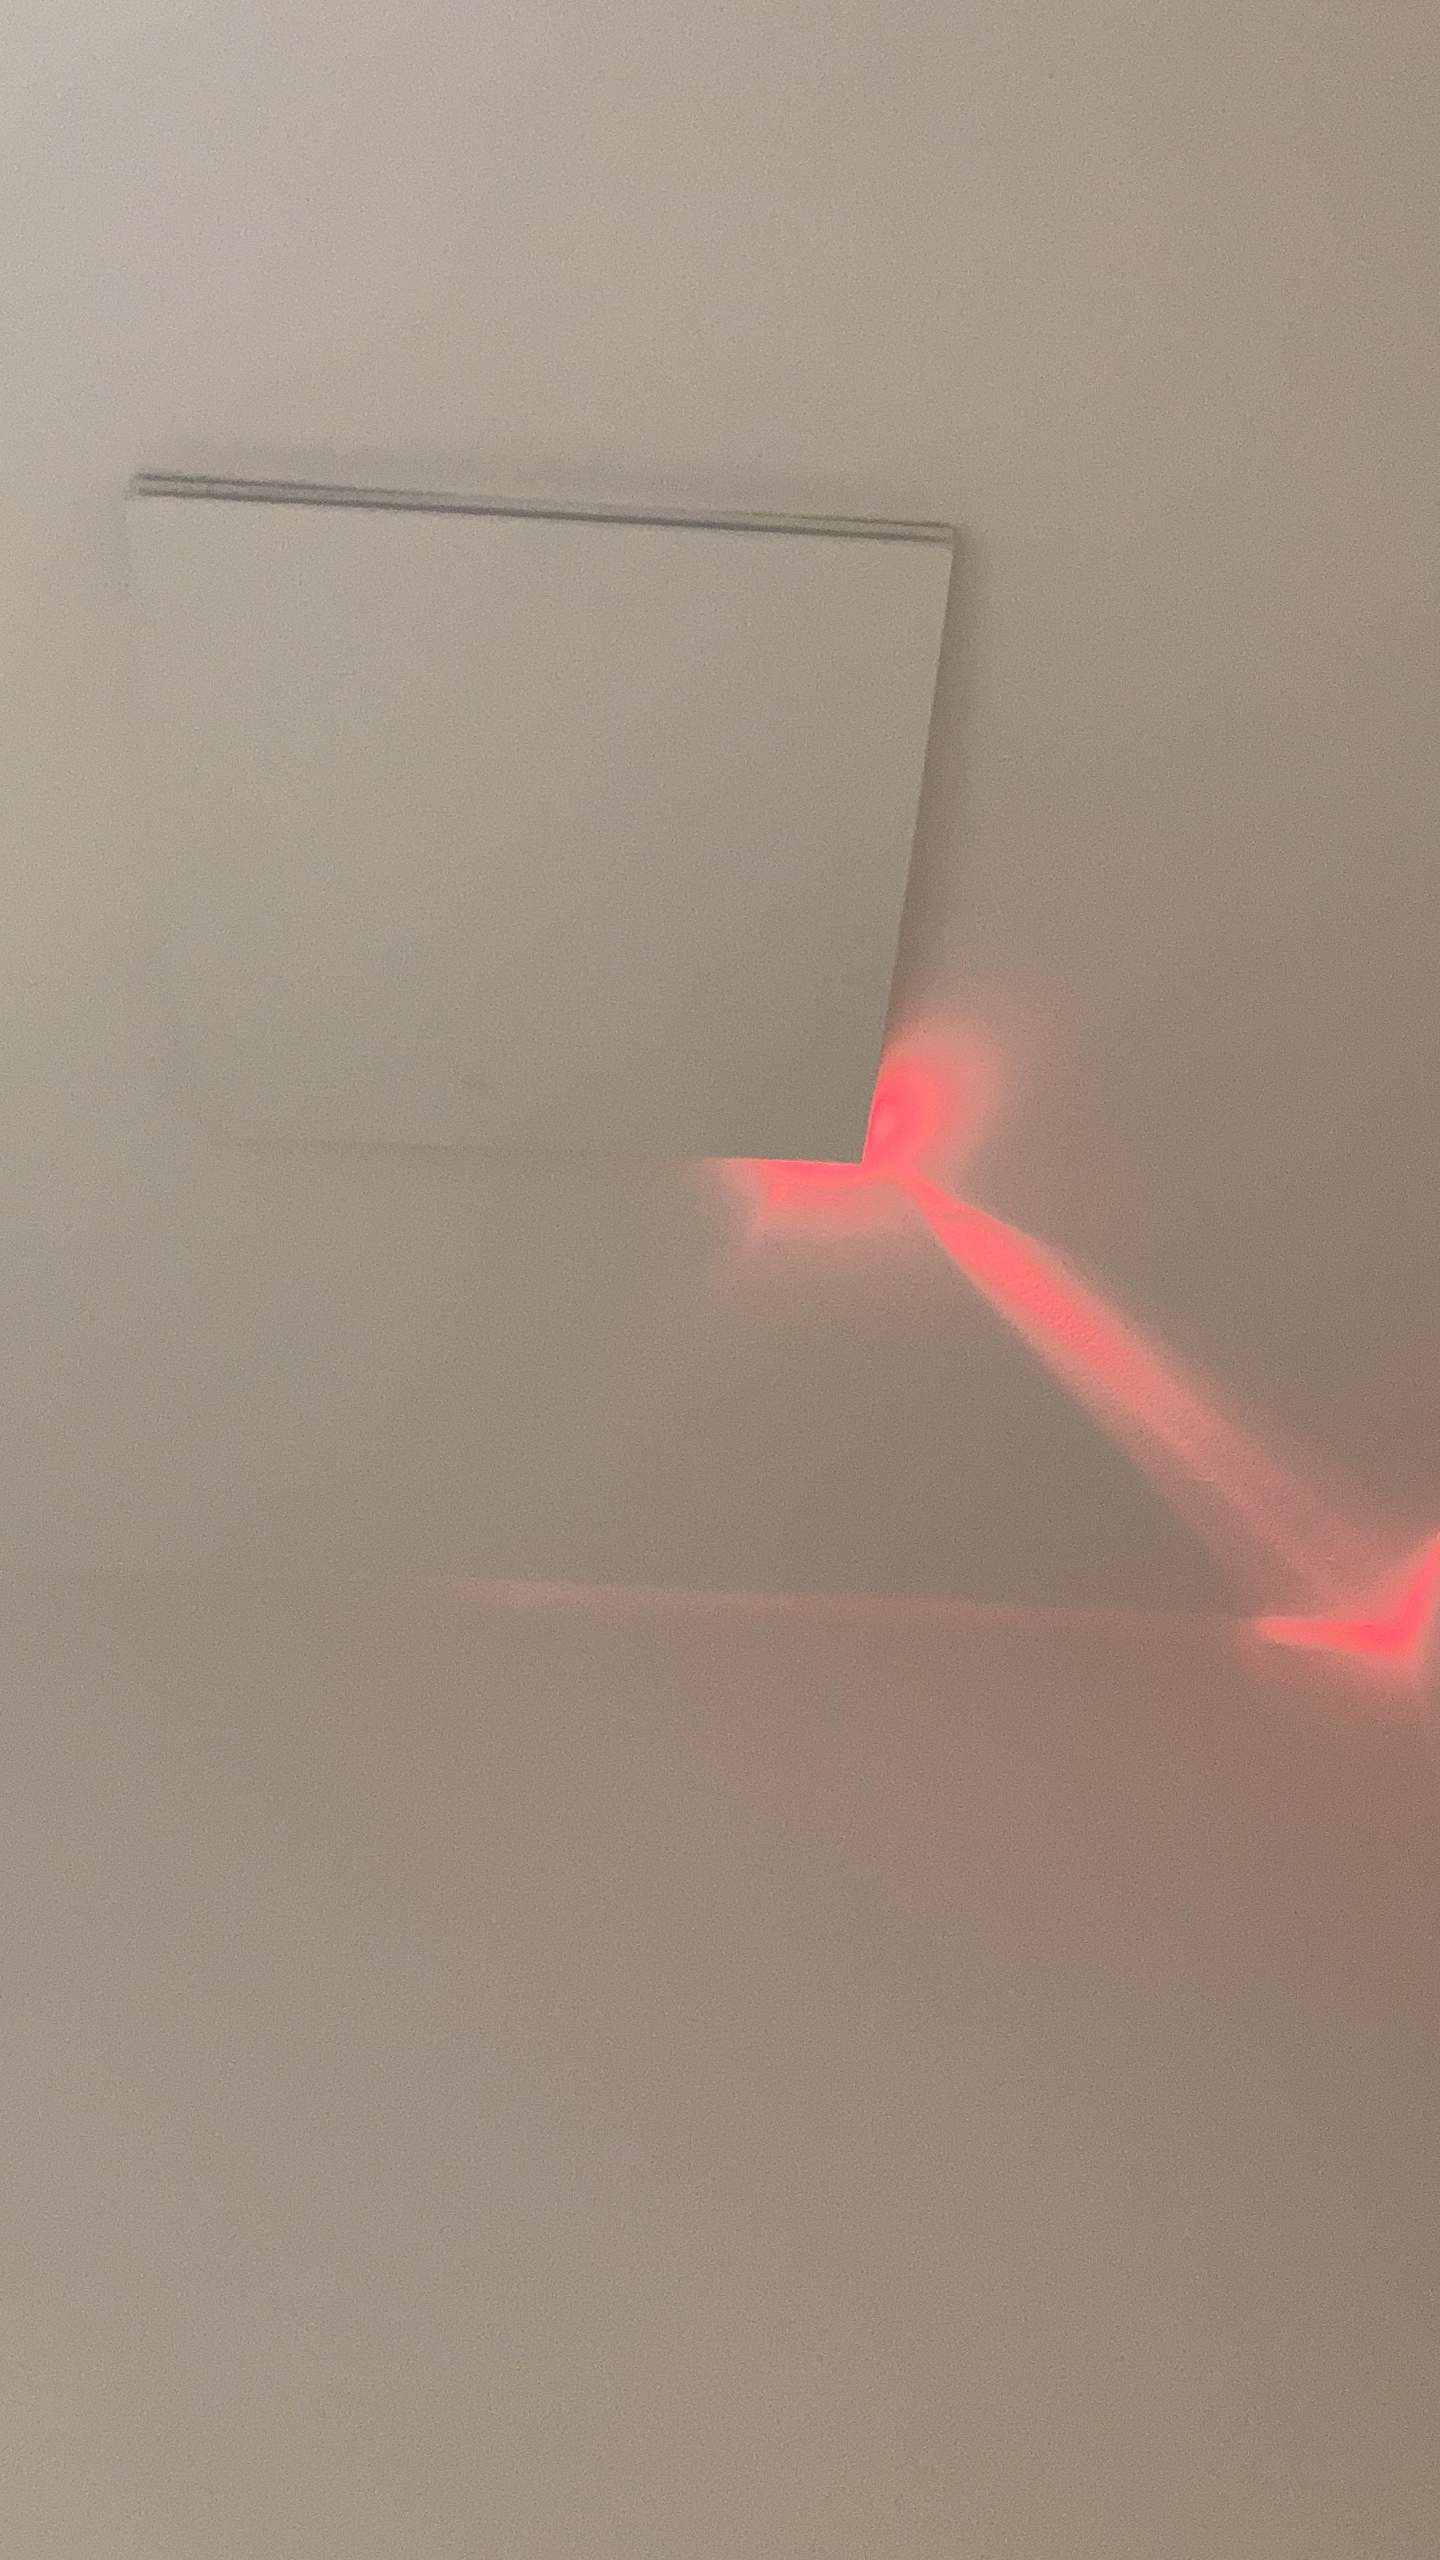 https://images.gutefrage.net/media/fragen/bilder/warum-leuchtet-aus-meinem-badezimmer-entluefter-ein-rotes-licht/0_full.jpg?v=1616684986000